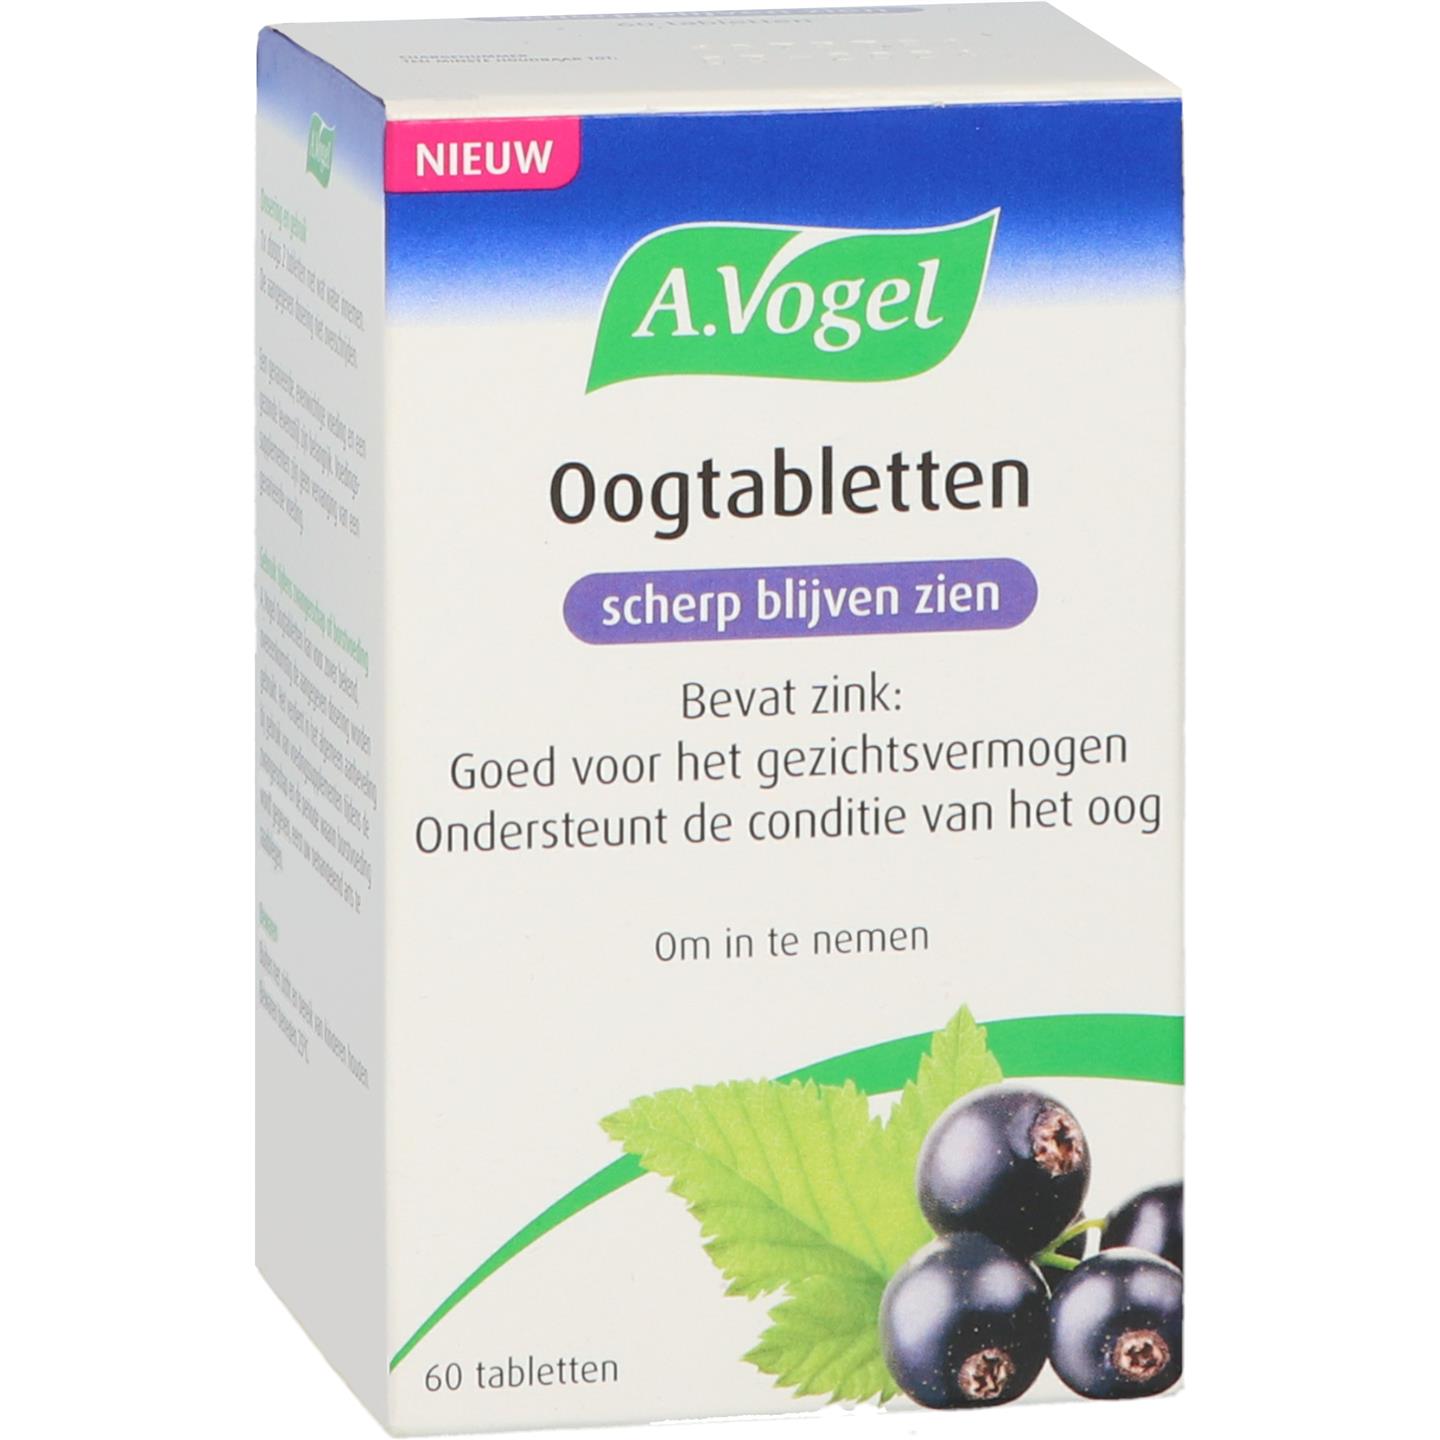 A.Vogel Oogtabletten 60 tabletten